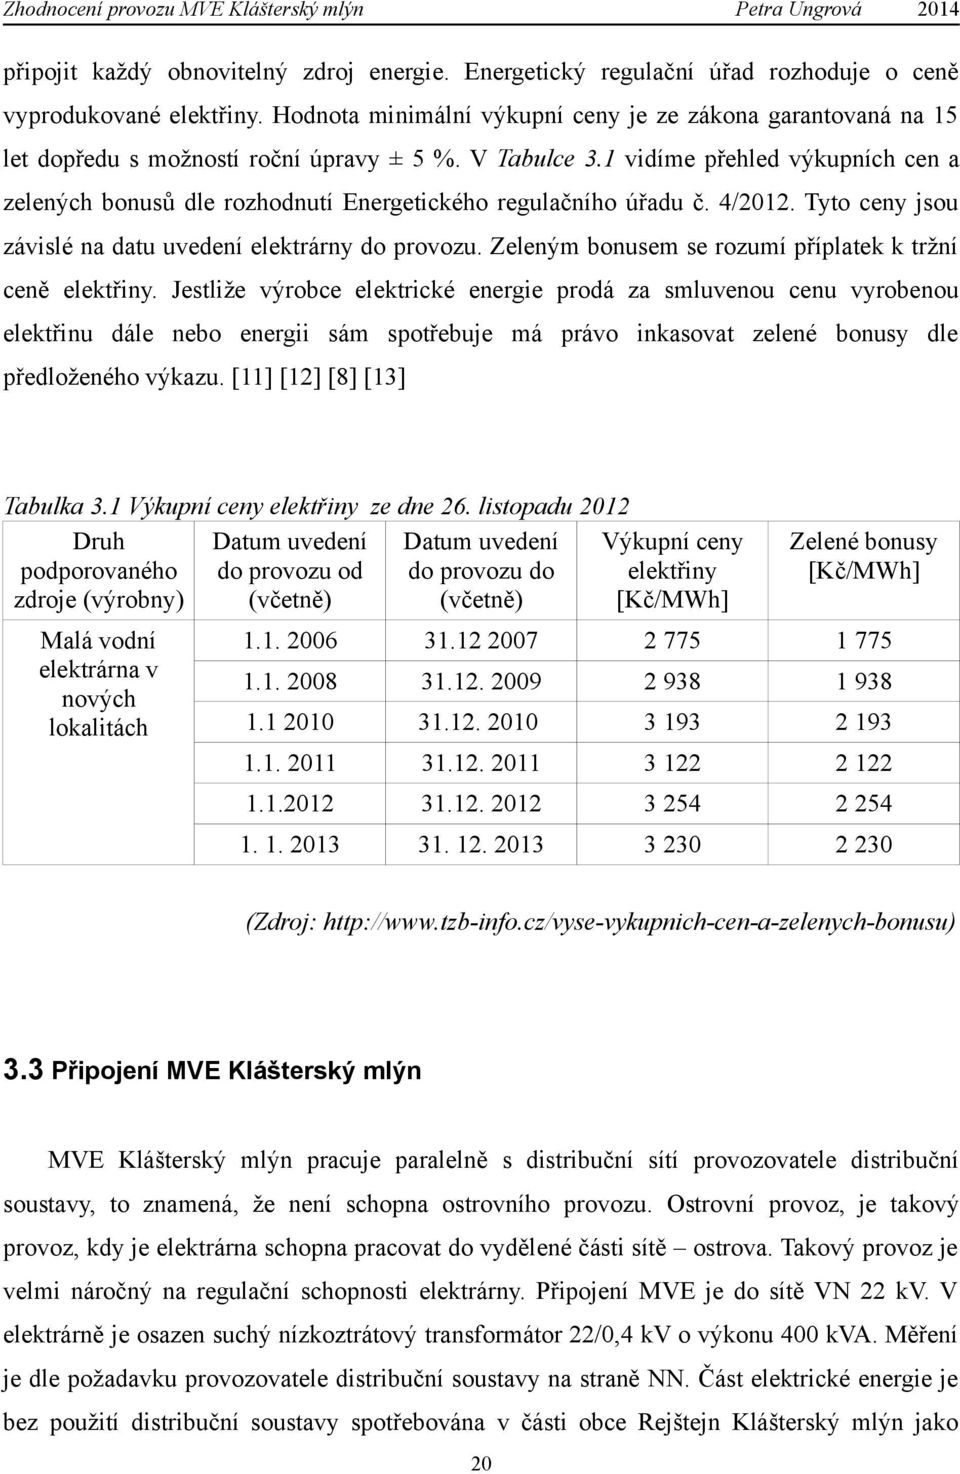 1 vidíme přehled výkupních cen a zelených bonusů dle rozhodnutí Energetického regulačního úřadu č. 4/2012. Tyto ceny jsou závislé na datu uvedení elektrárny do provozu.